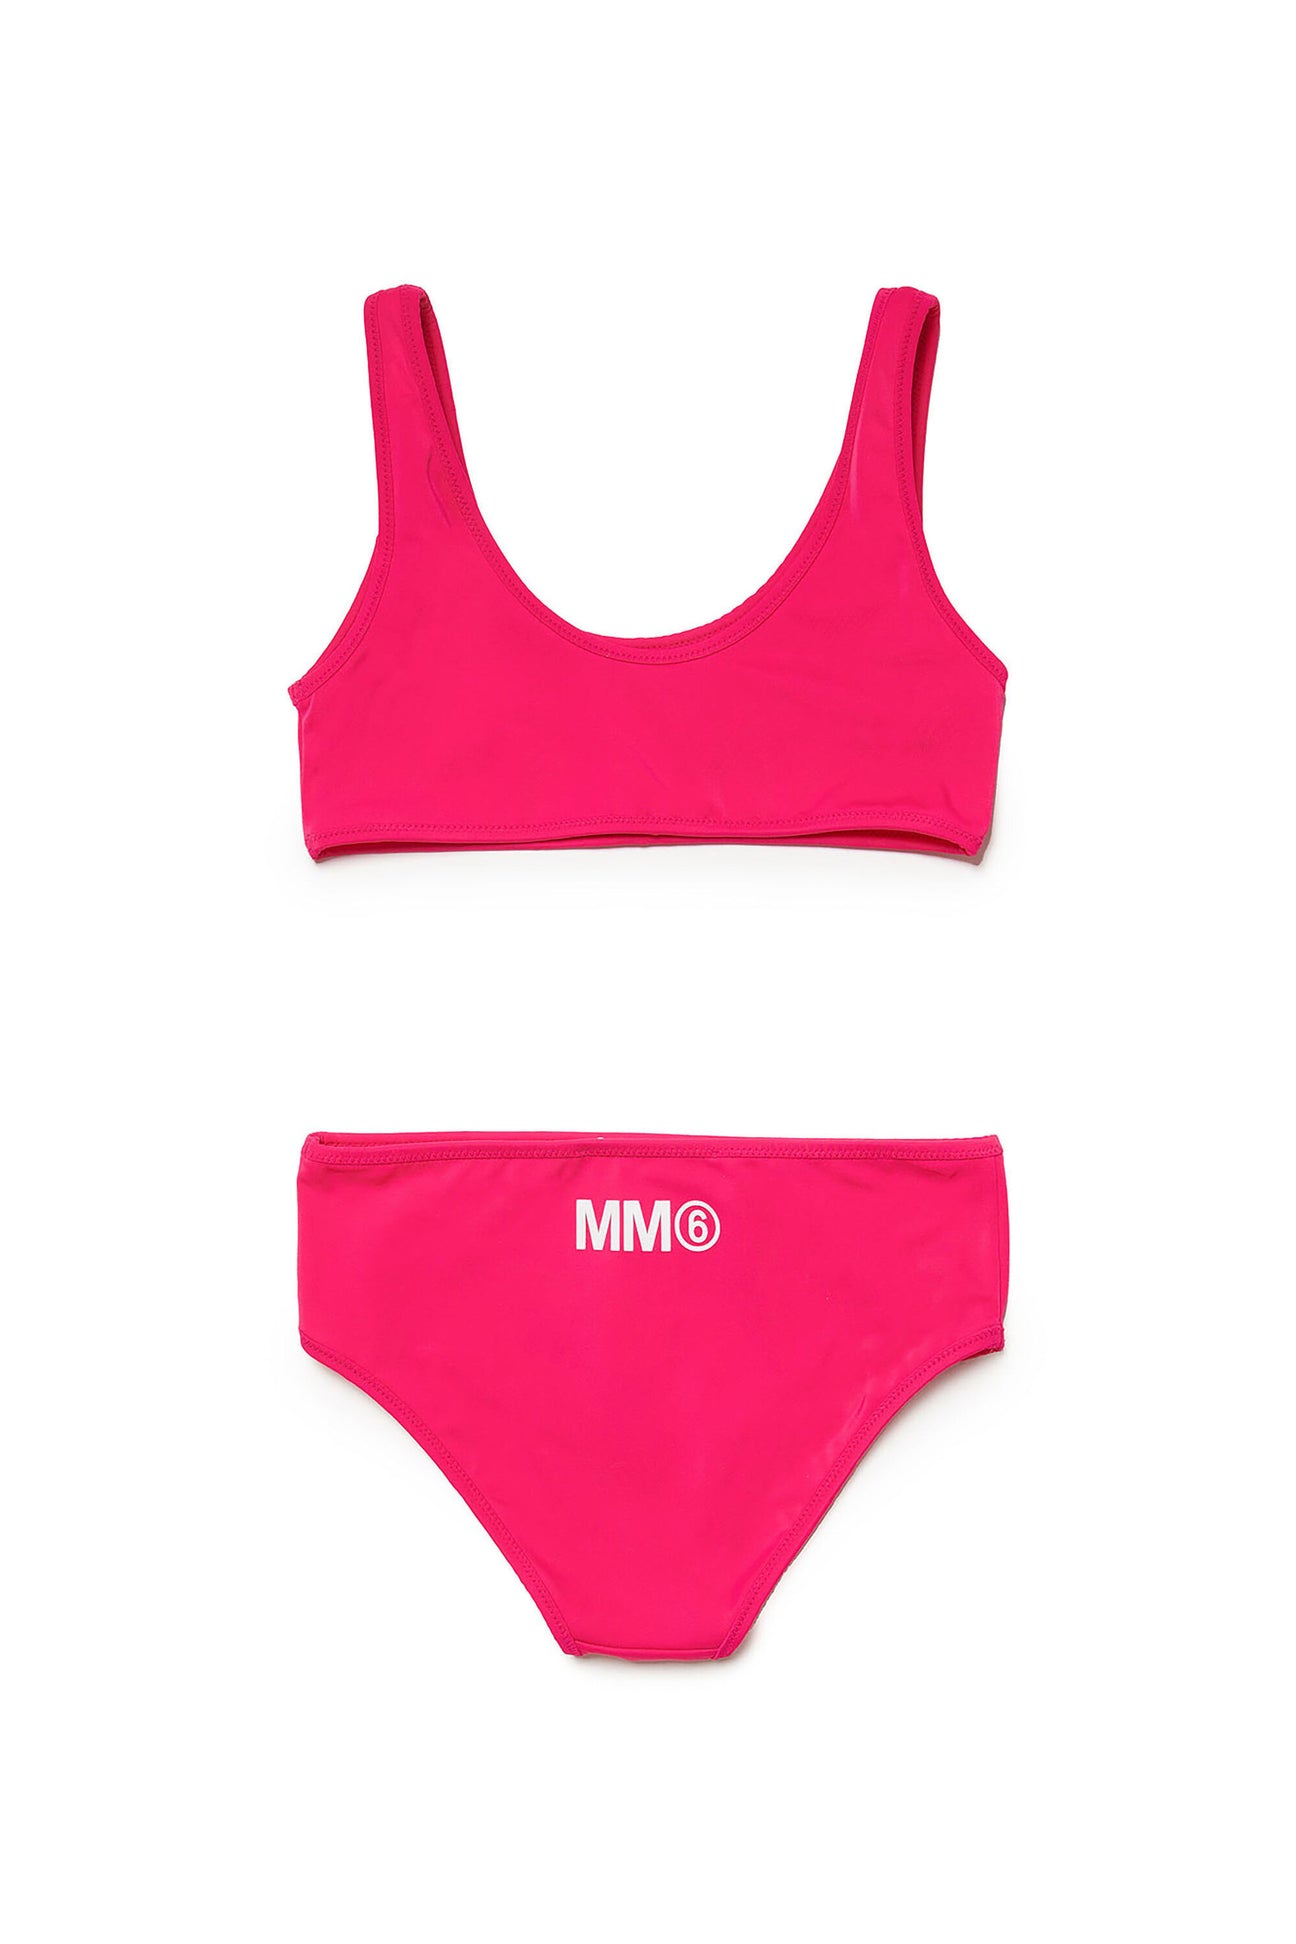 Costume bikini in lycra con logo MM6 Costume bikini in lycra con logo MM6